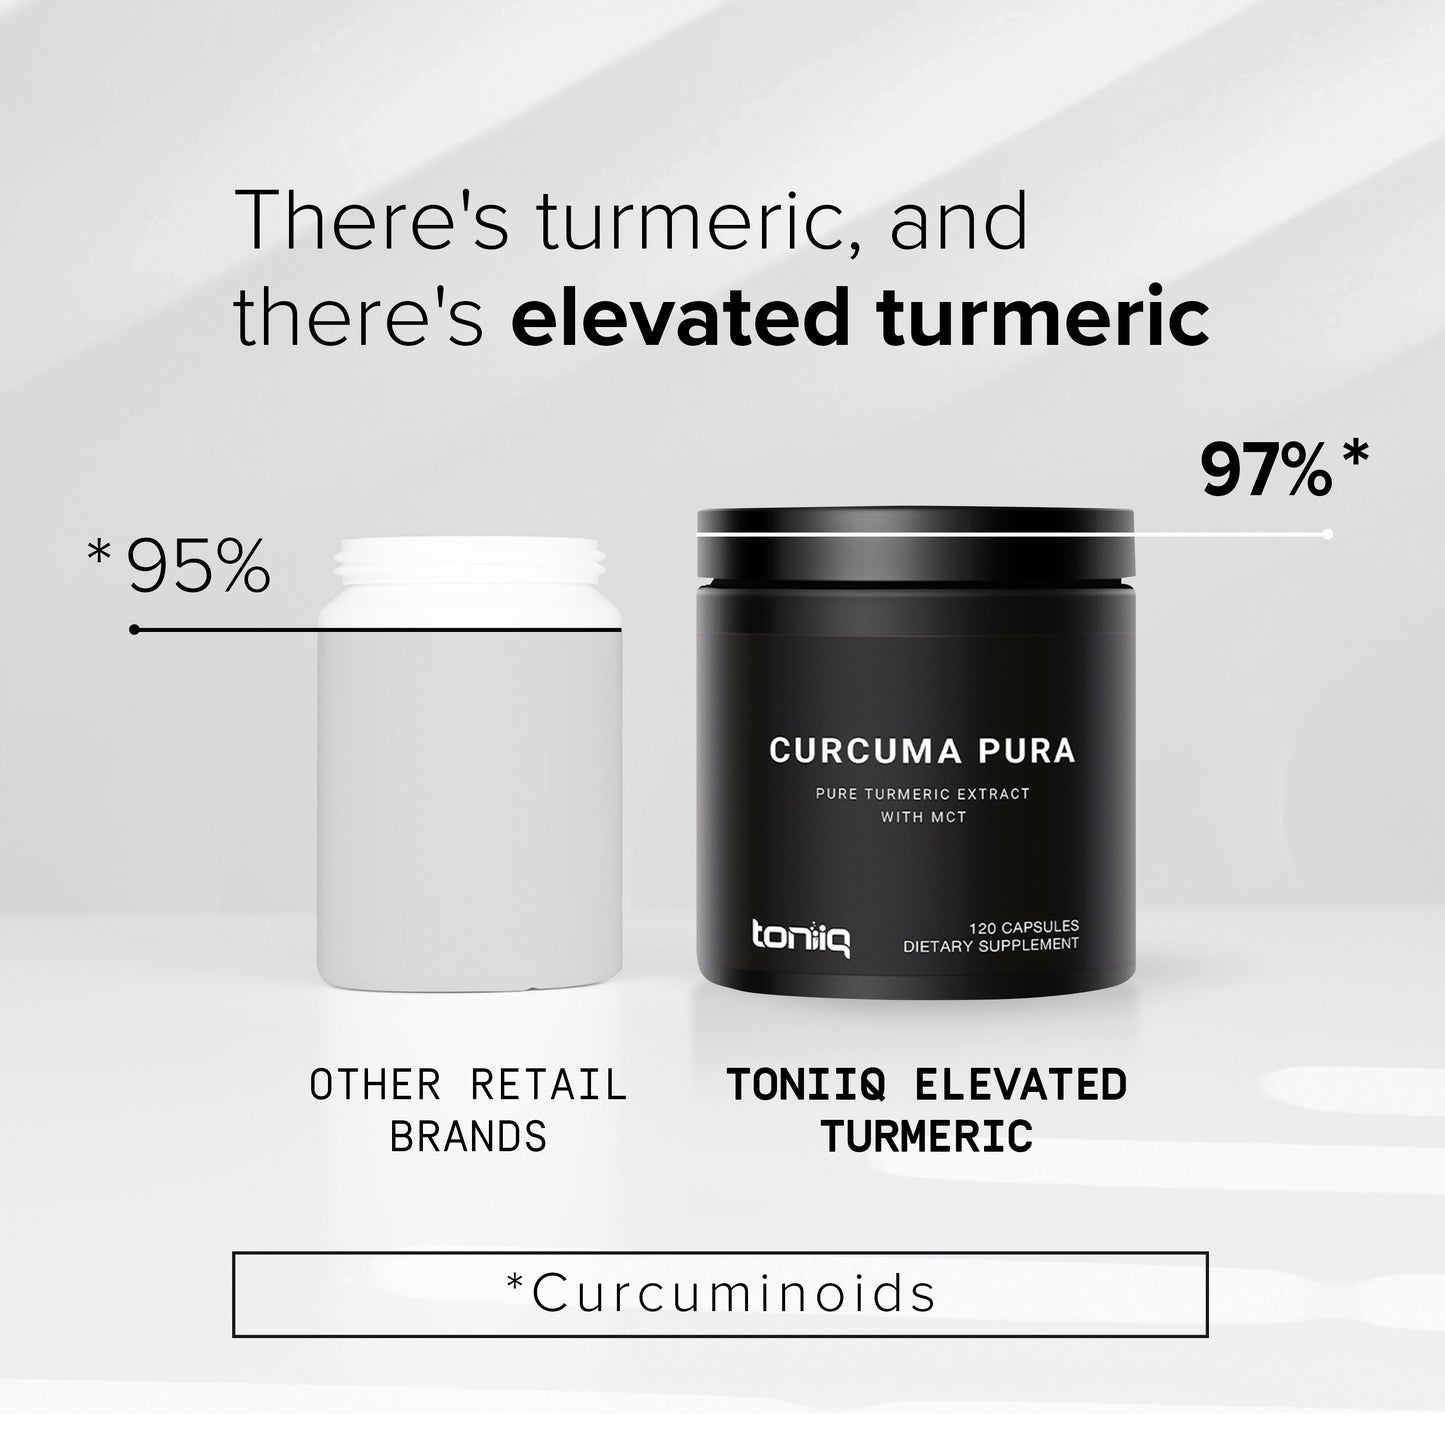 CurcumaPura 97%